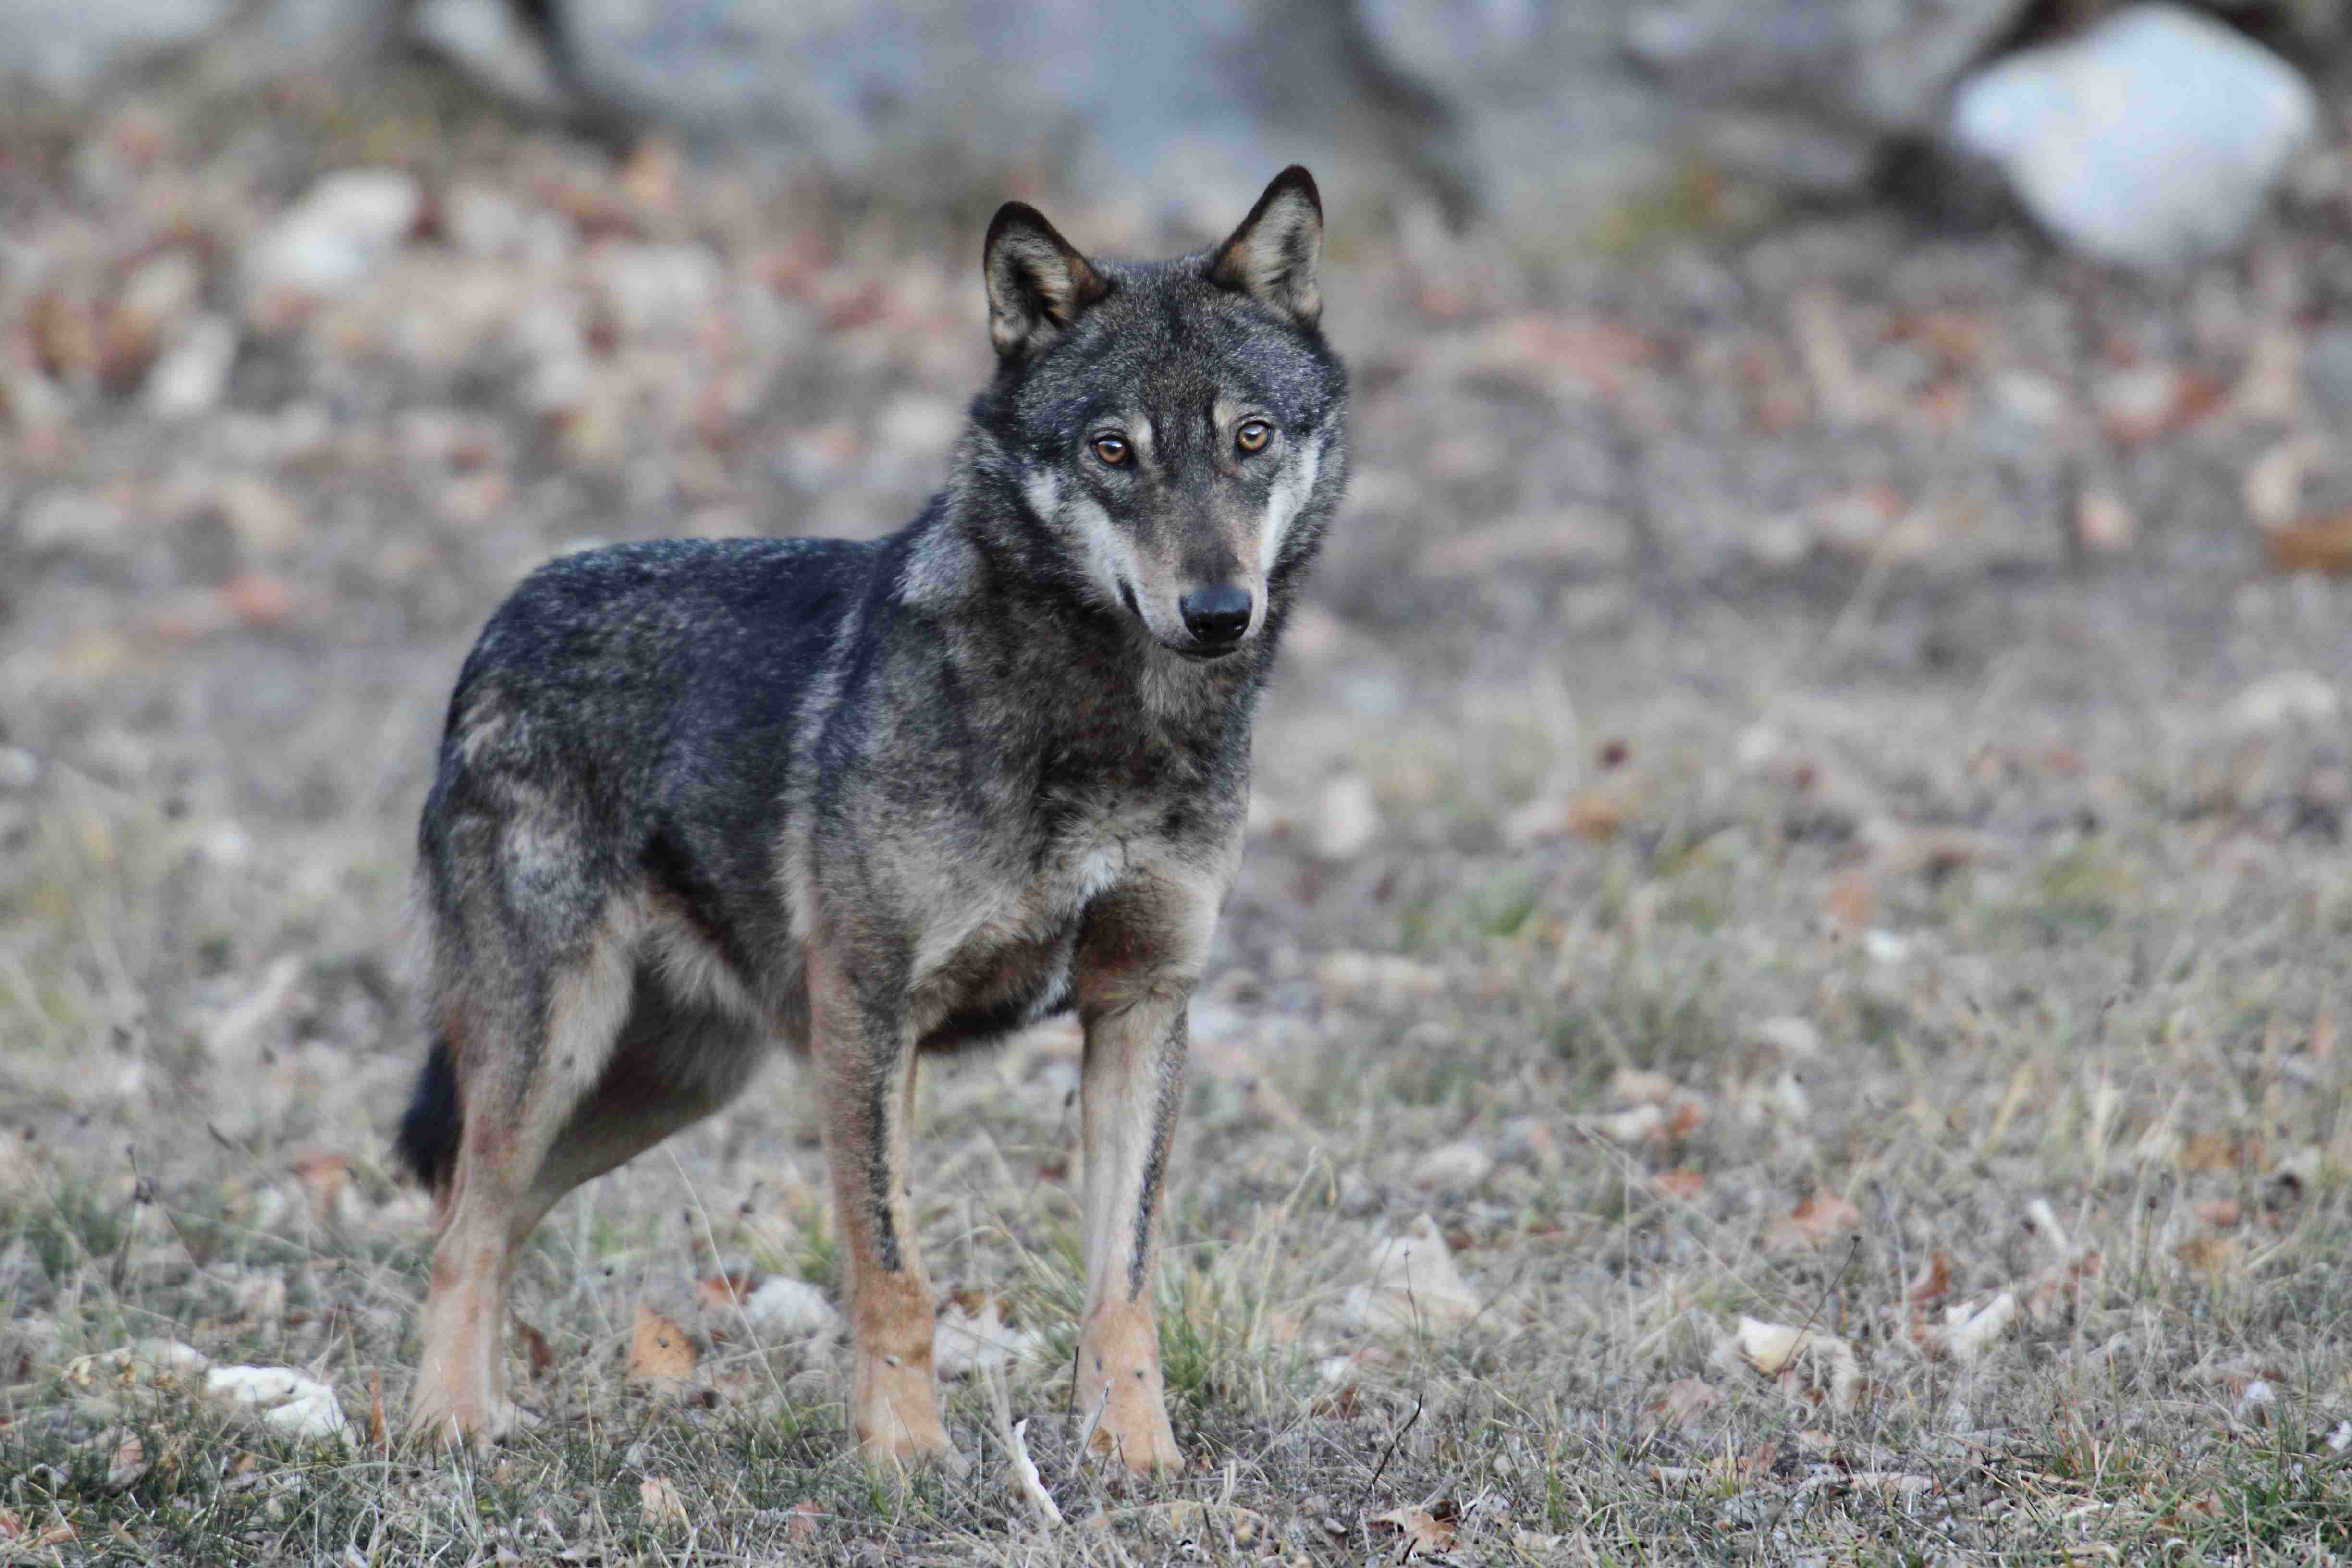 Comment Almo Nature s’est engagé pour la protection des loups en Italie